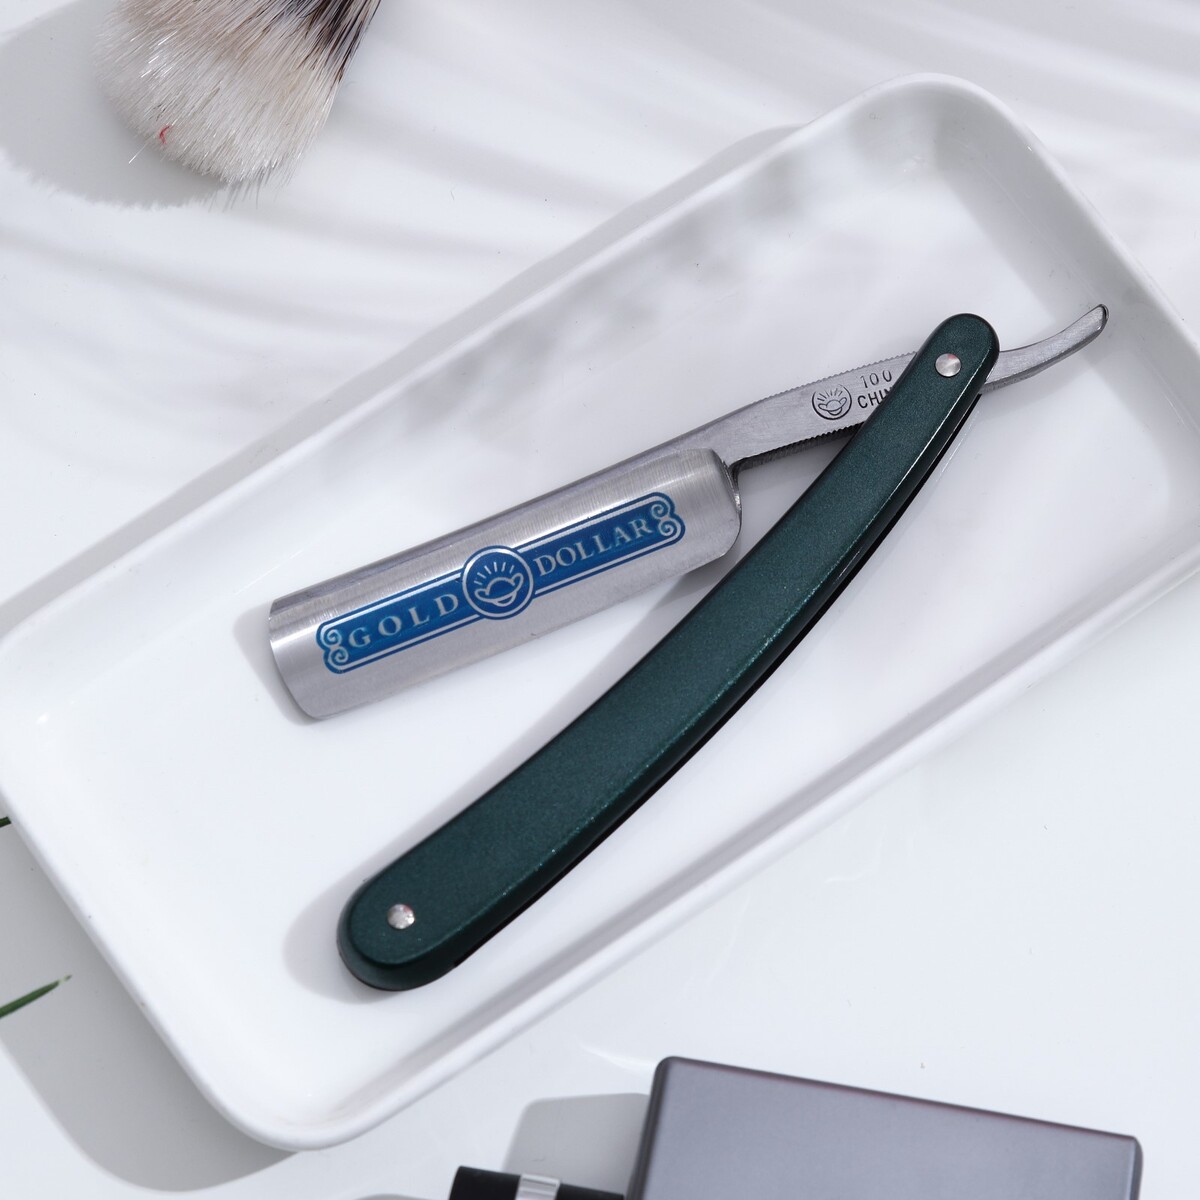 Опасная бритва для традиционного бритья опасная бритва шаветт без лезвия 16 5 24 × 2 5 × 1 3 см пластиковая серебристый